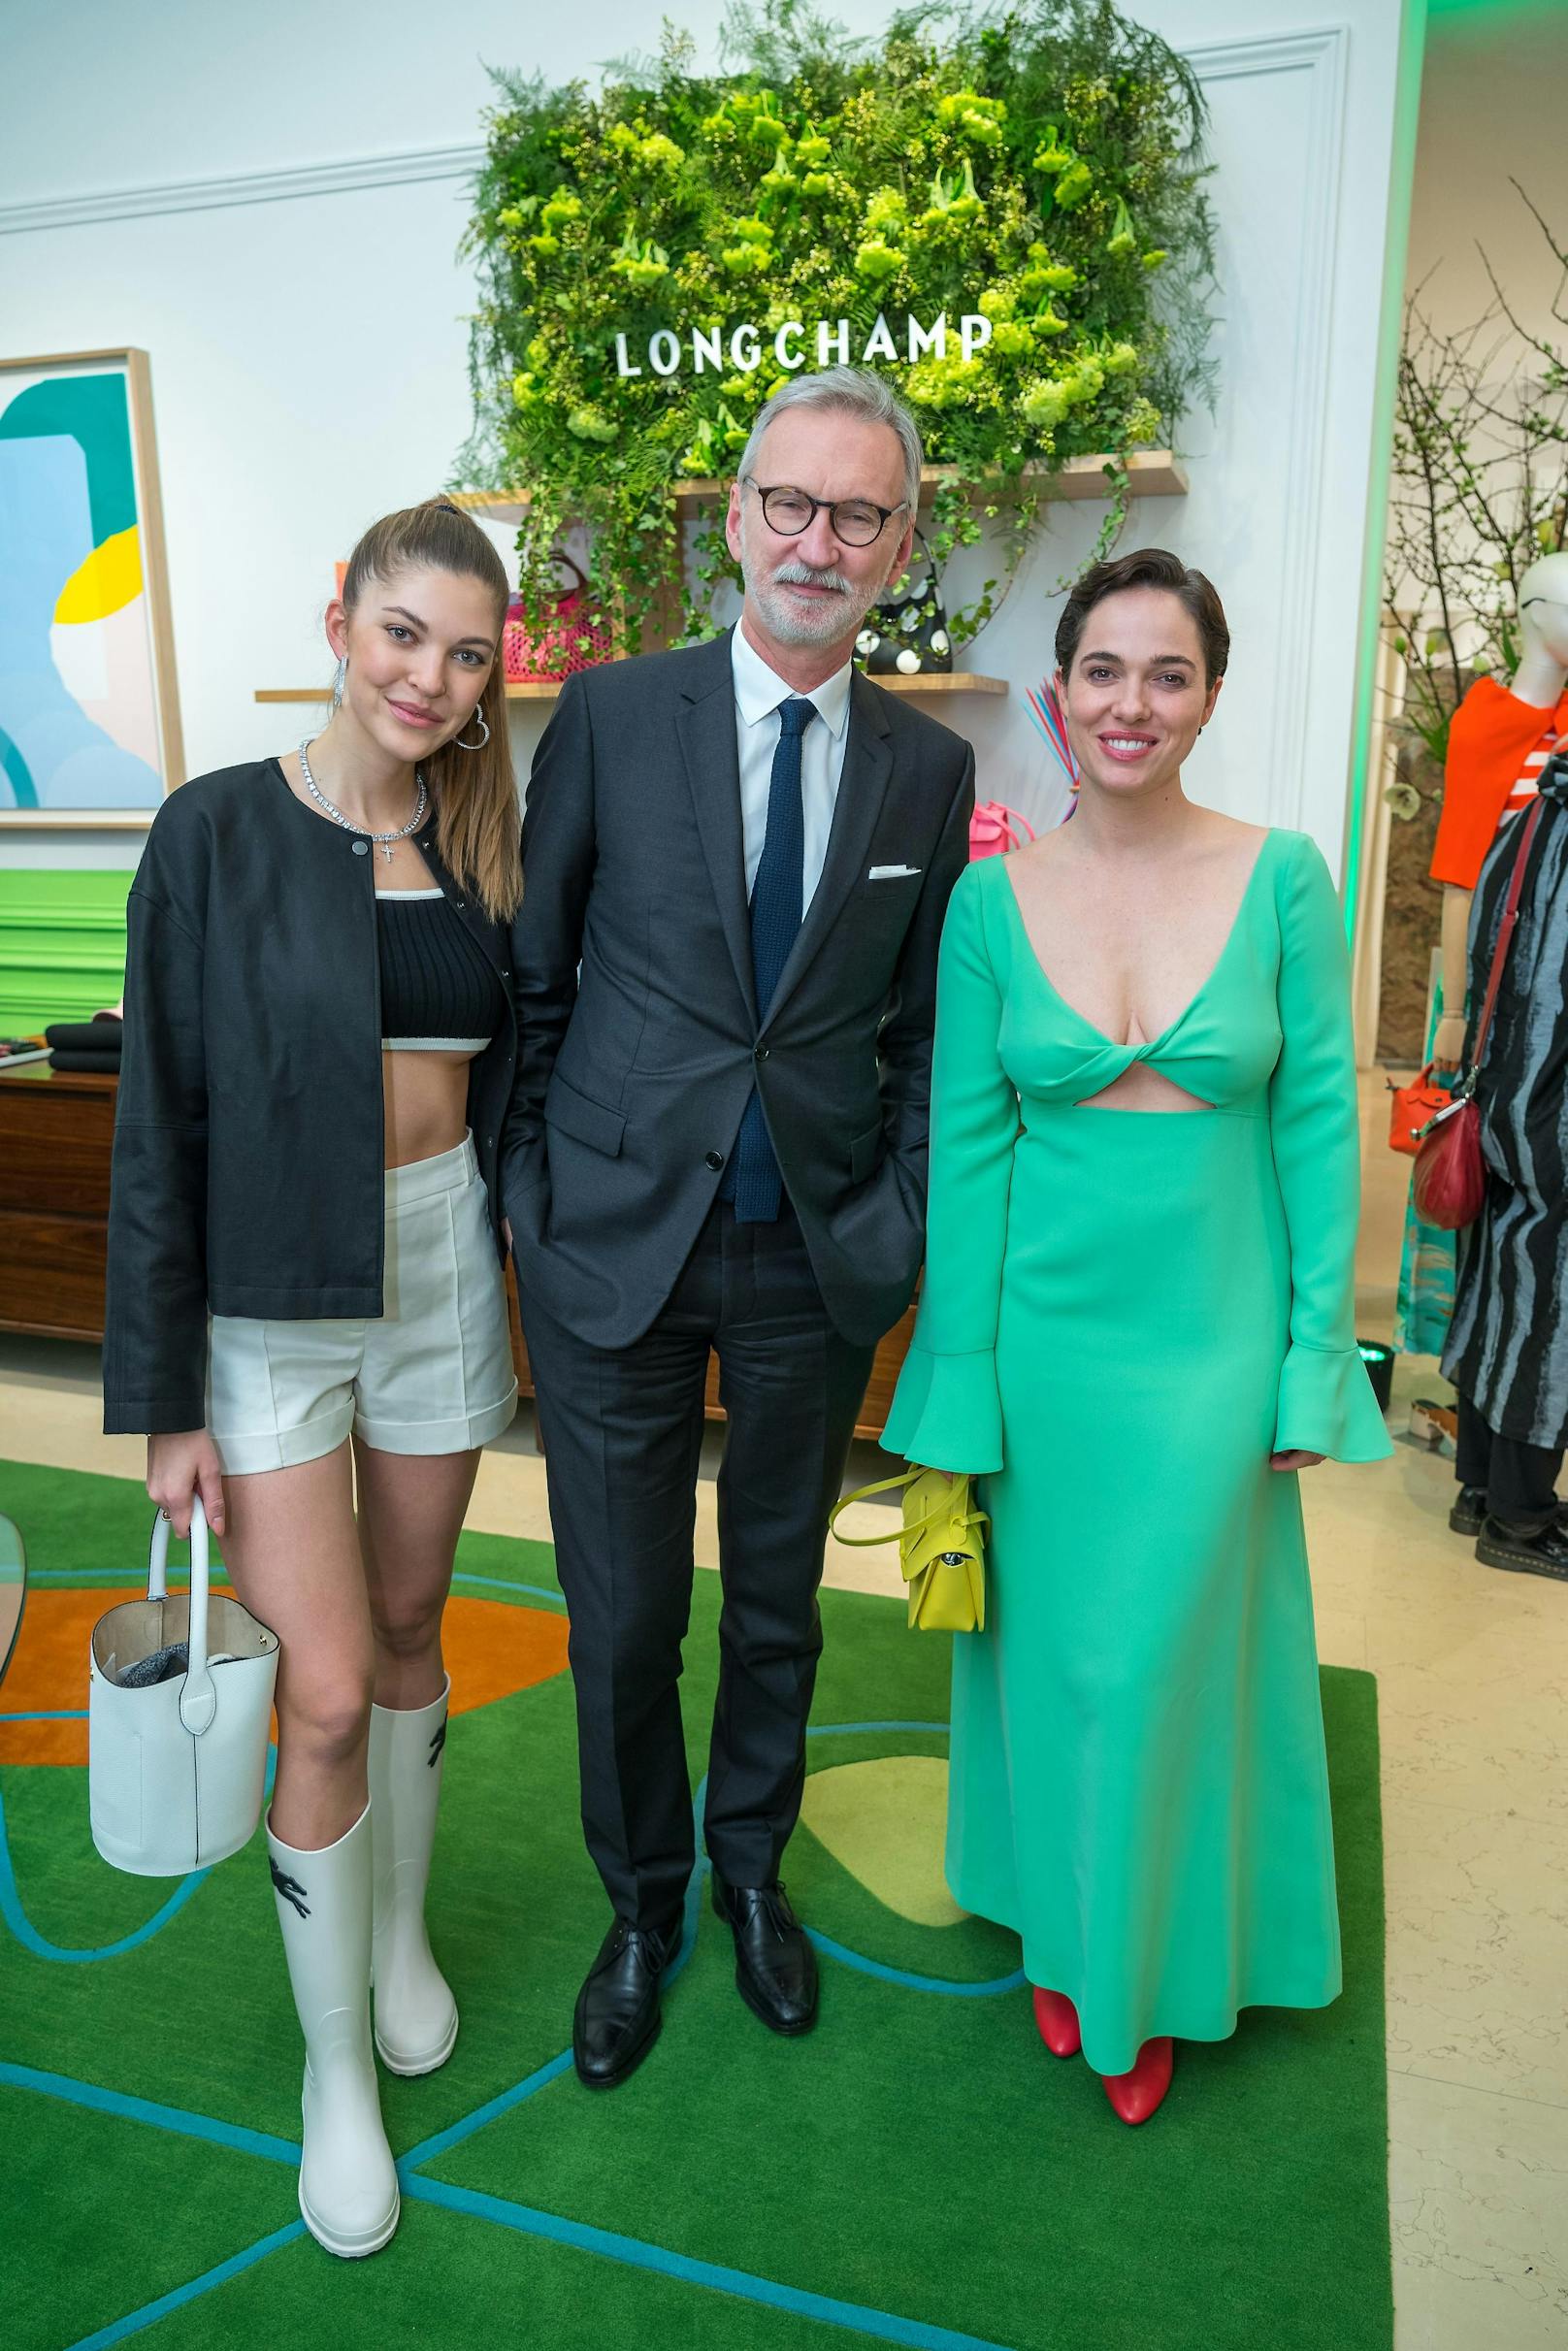 Schauspielerin Verena Altenberger, Swarovski-Spross Paulina und der Longchamp CEO Jean Cassegrain genießen den Abend.